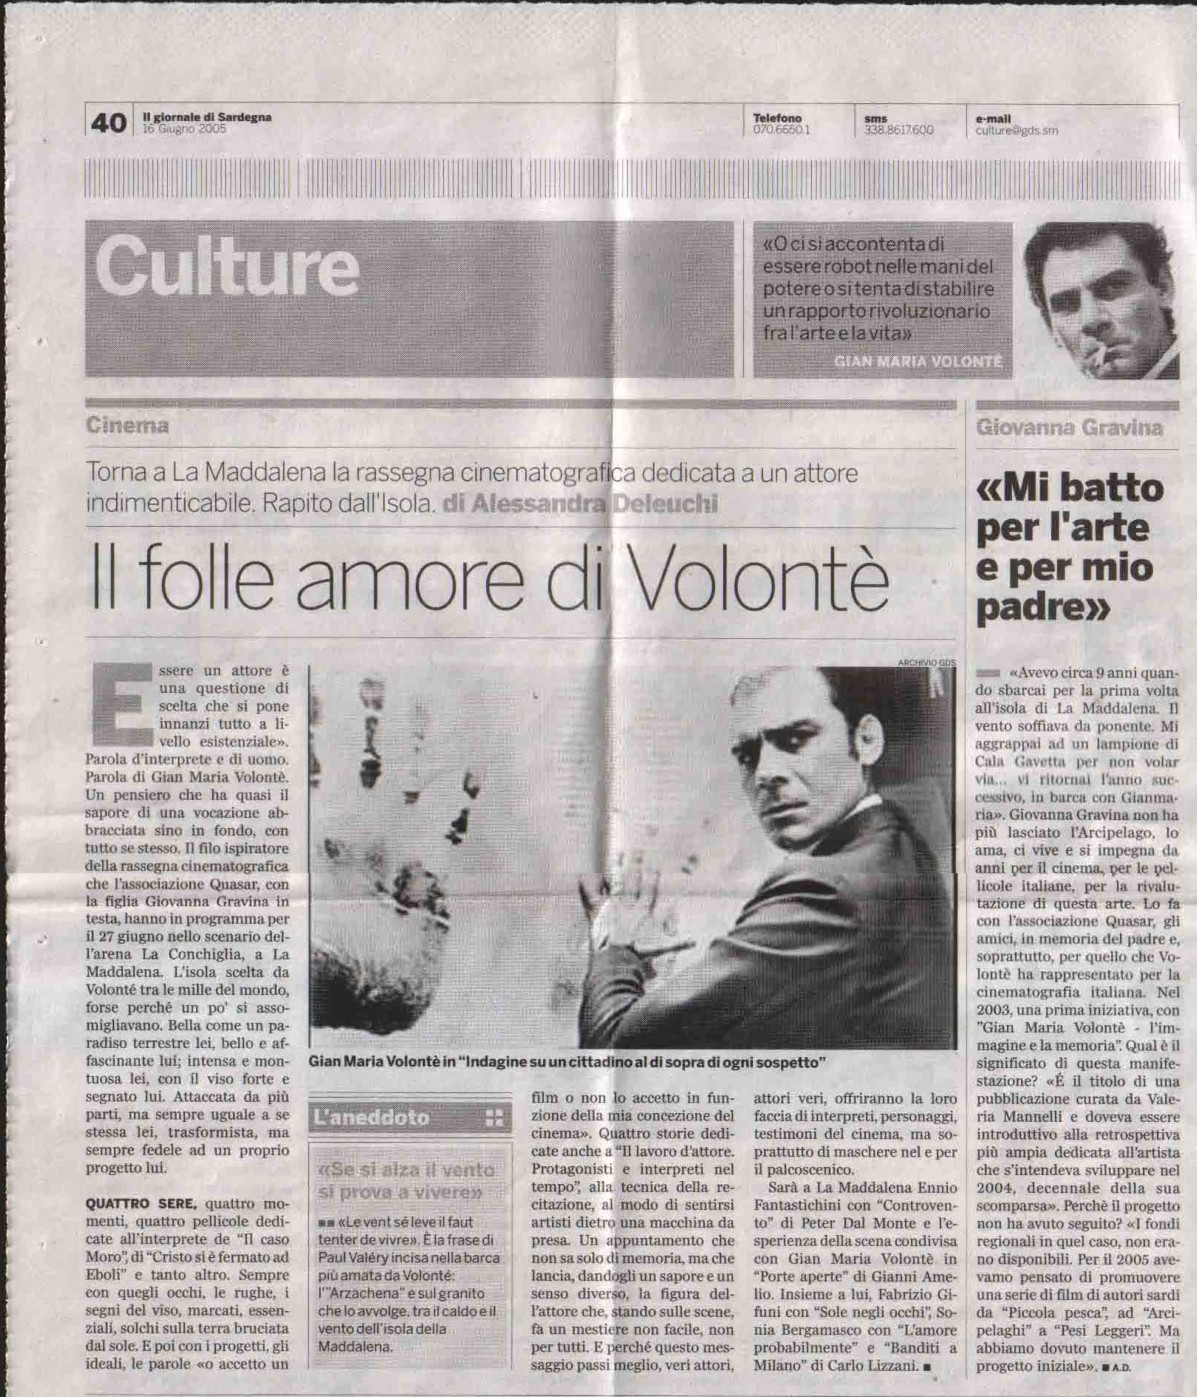 Il giornale di Sardegna (culture) 16 giu 2005